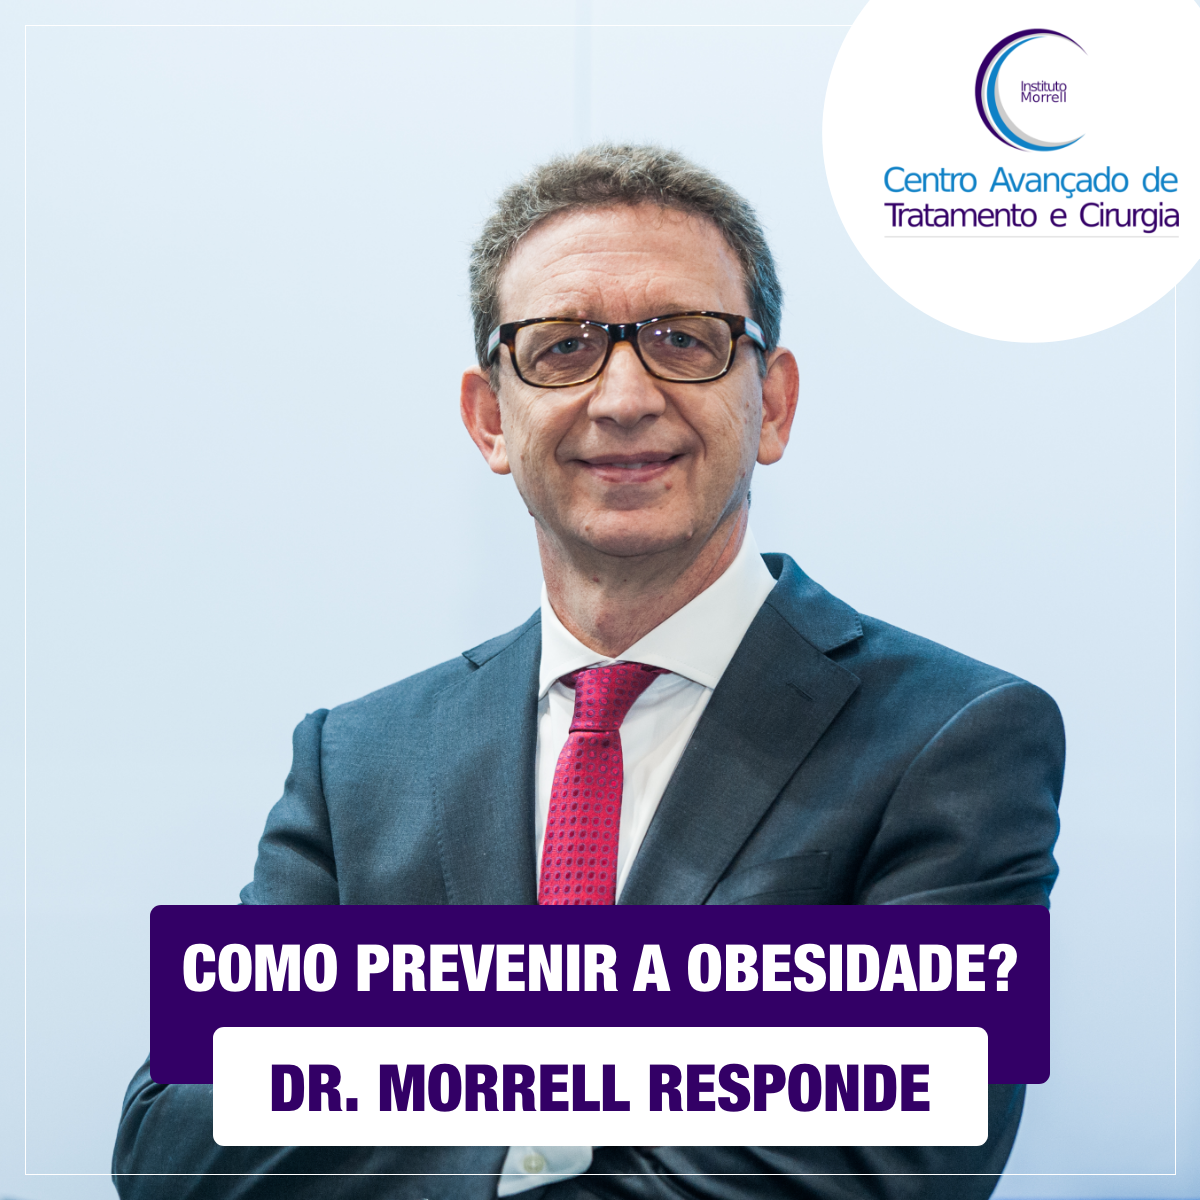 DR._MORRELL_RESPONDE_-_COMO_PREVENIR_A_OBESIDADE-1200x1200.png